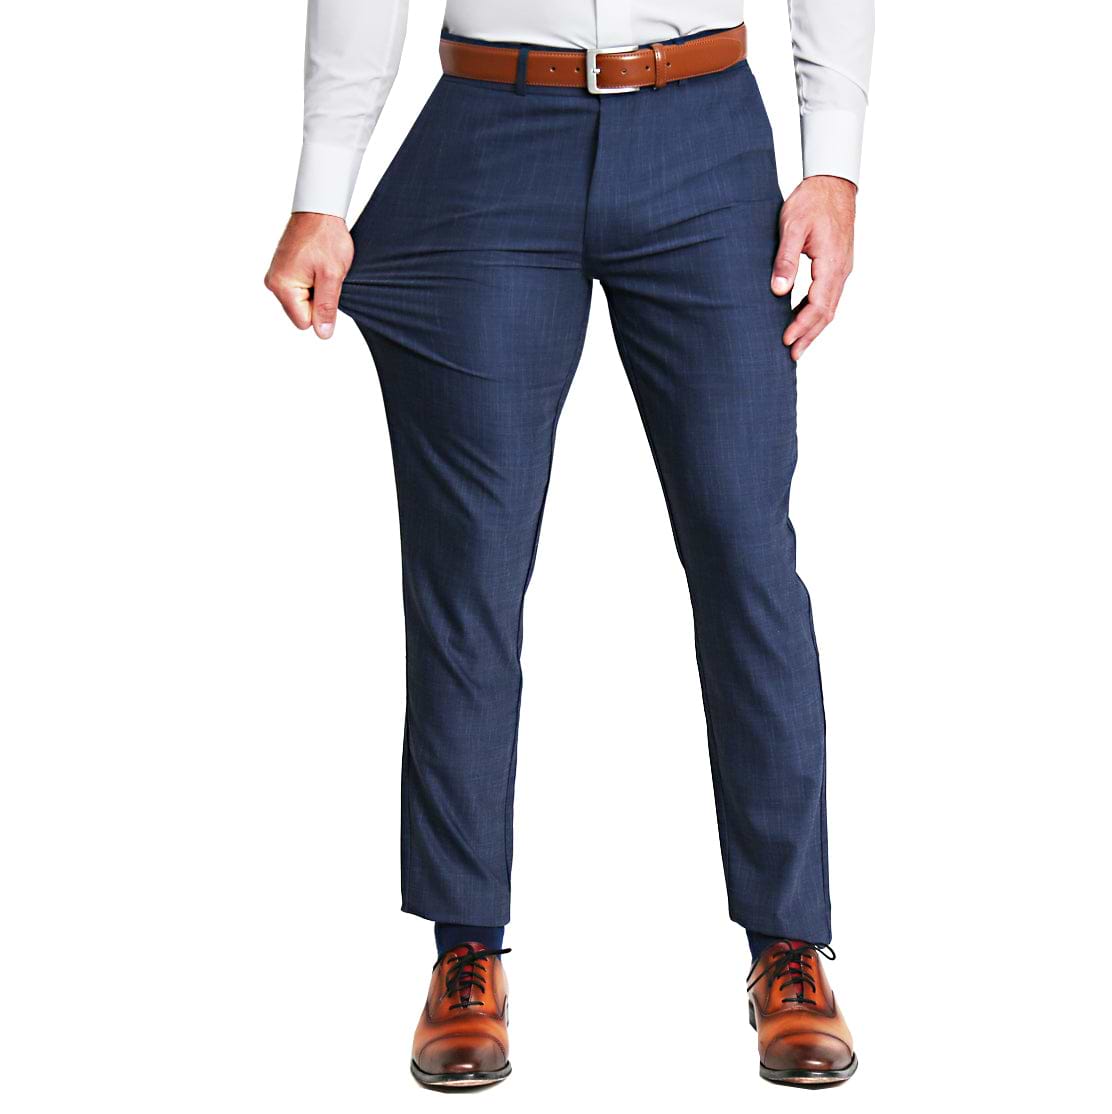 Ben Sherman | Men's Blue Athletic Fit Suit Trouser | Suit Direct